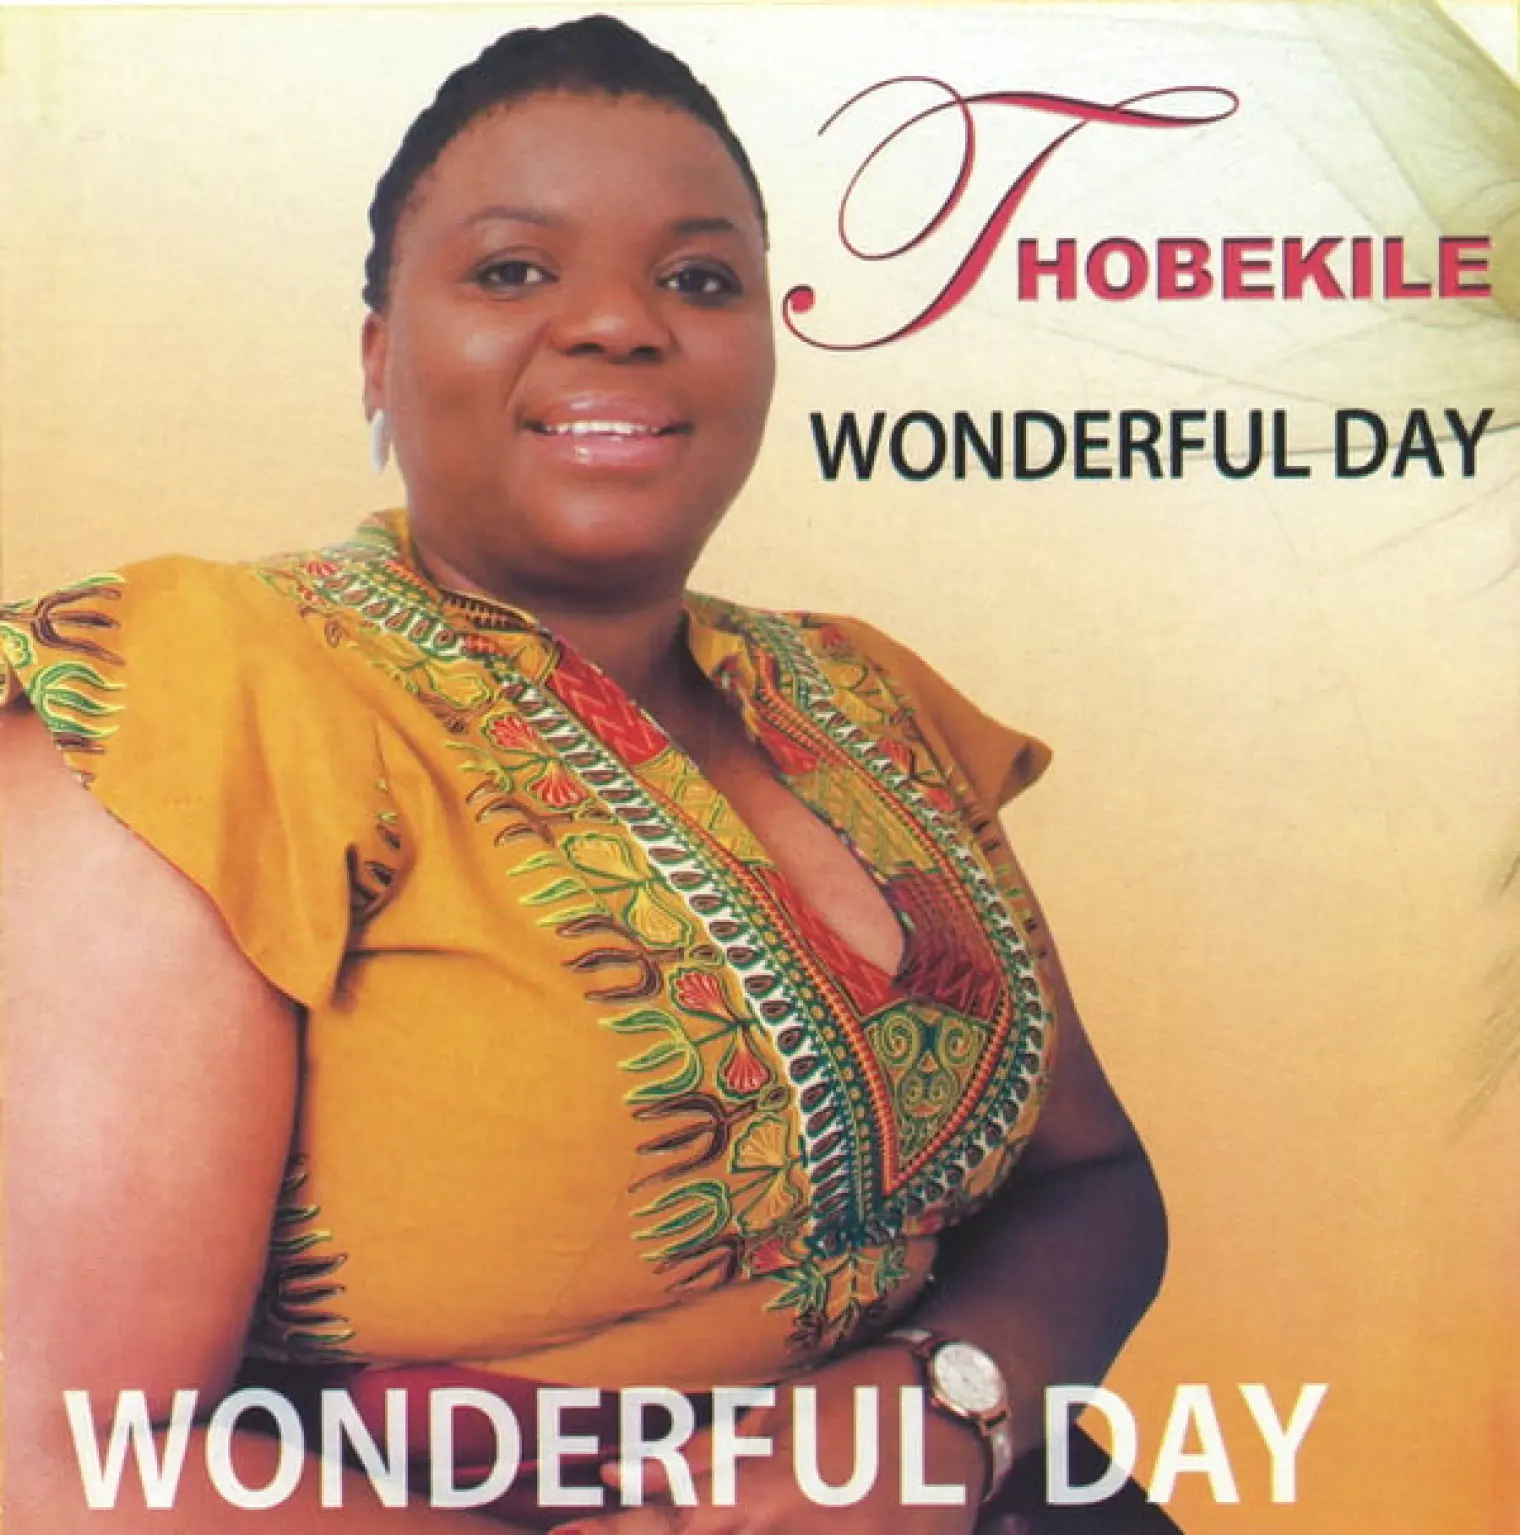 Wonderful Day -  Thobekile 